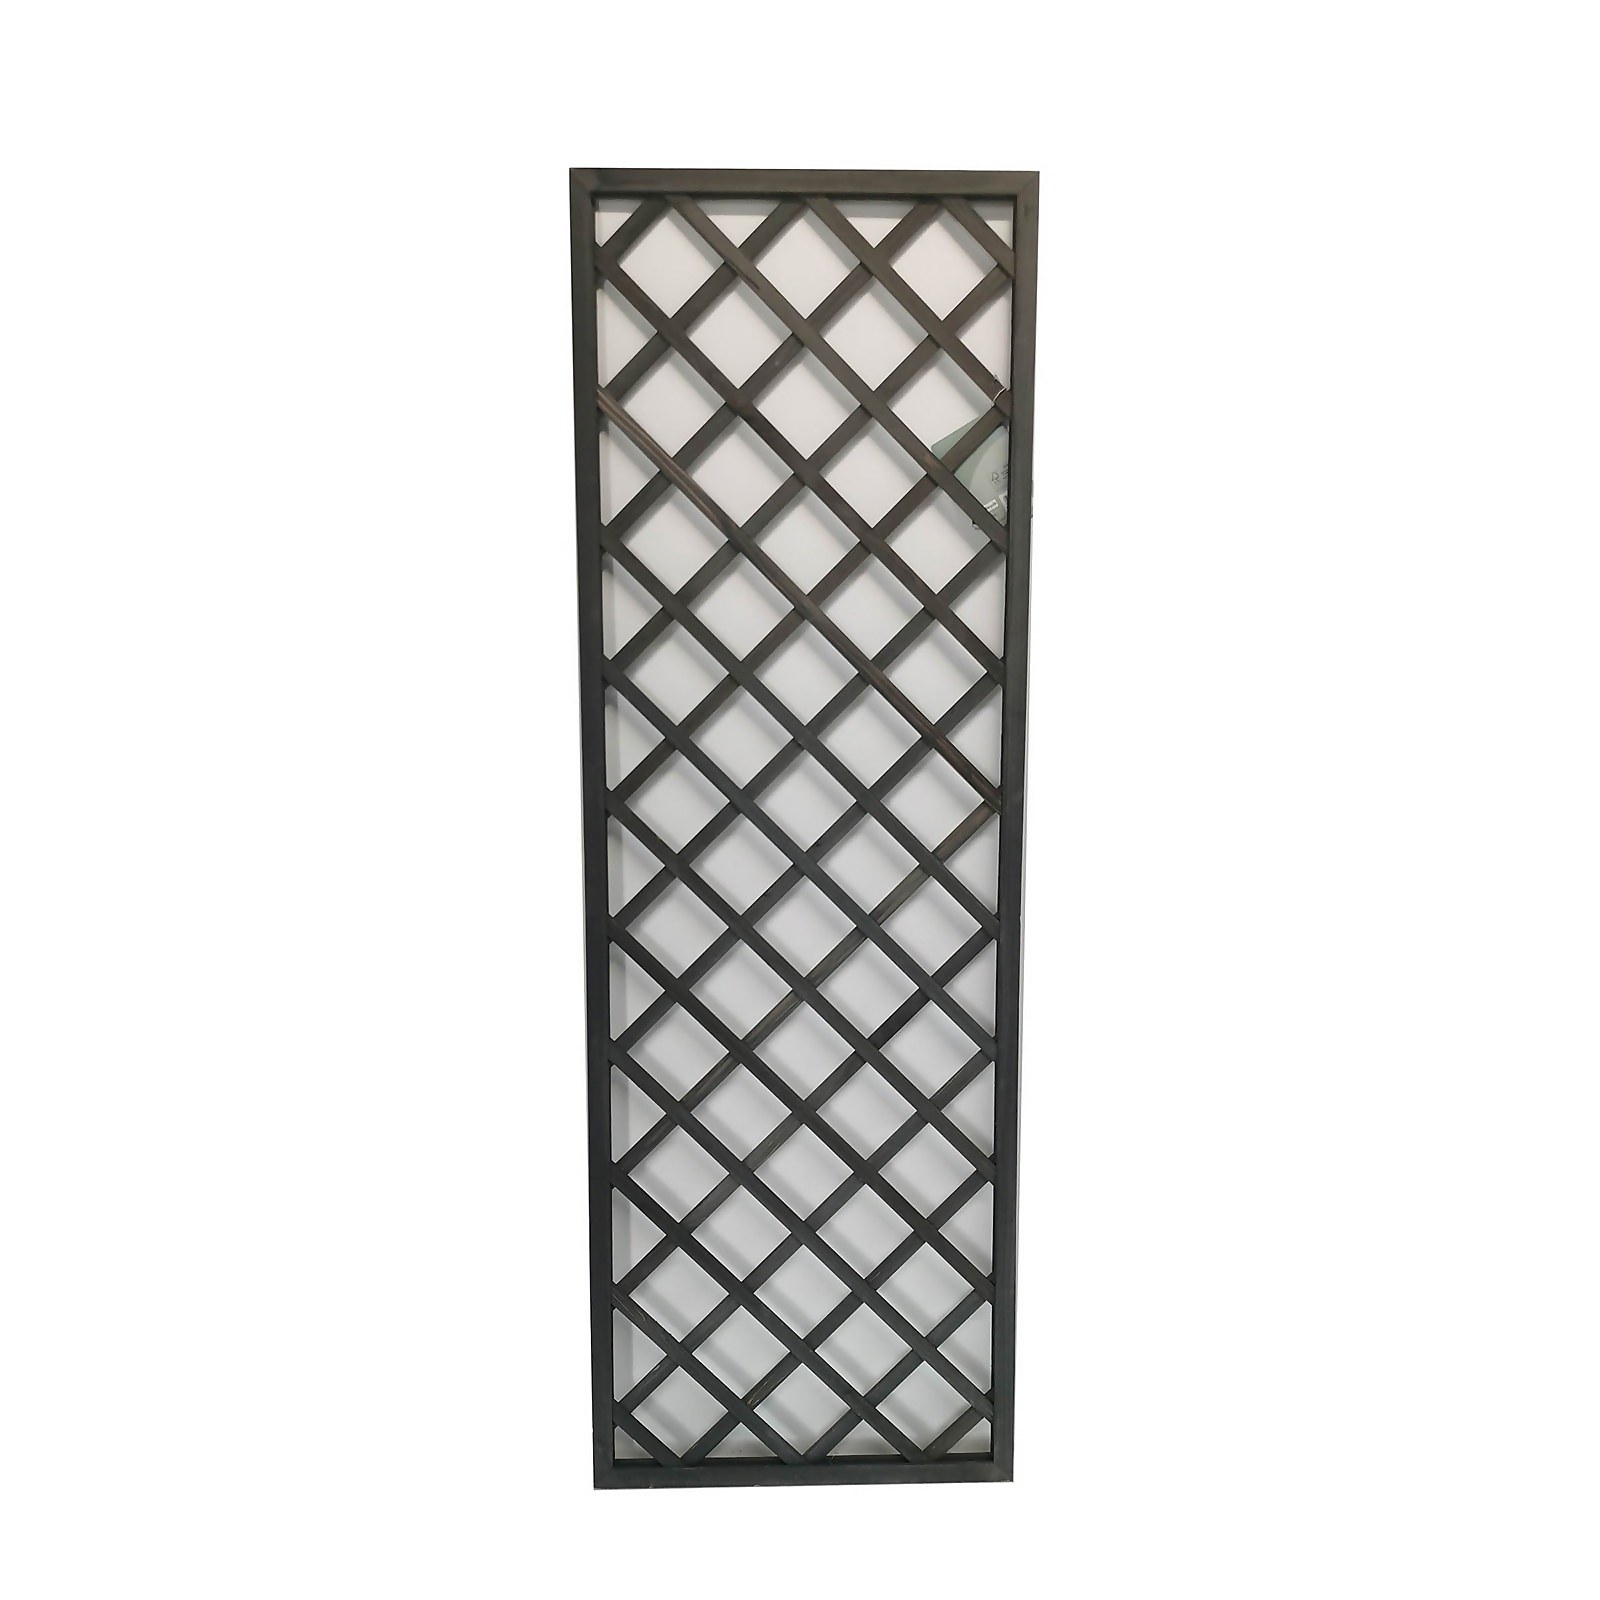 Photo of 1.8m X 60cm Wooden Trellis Panel - Grey